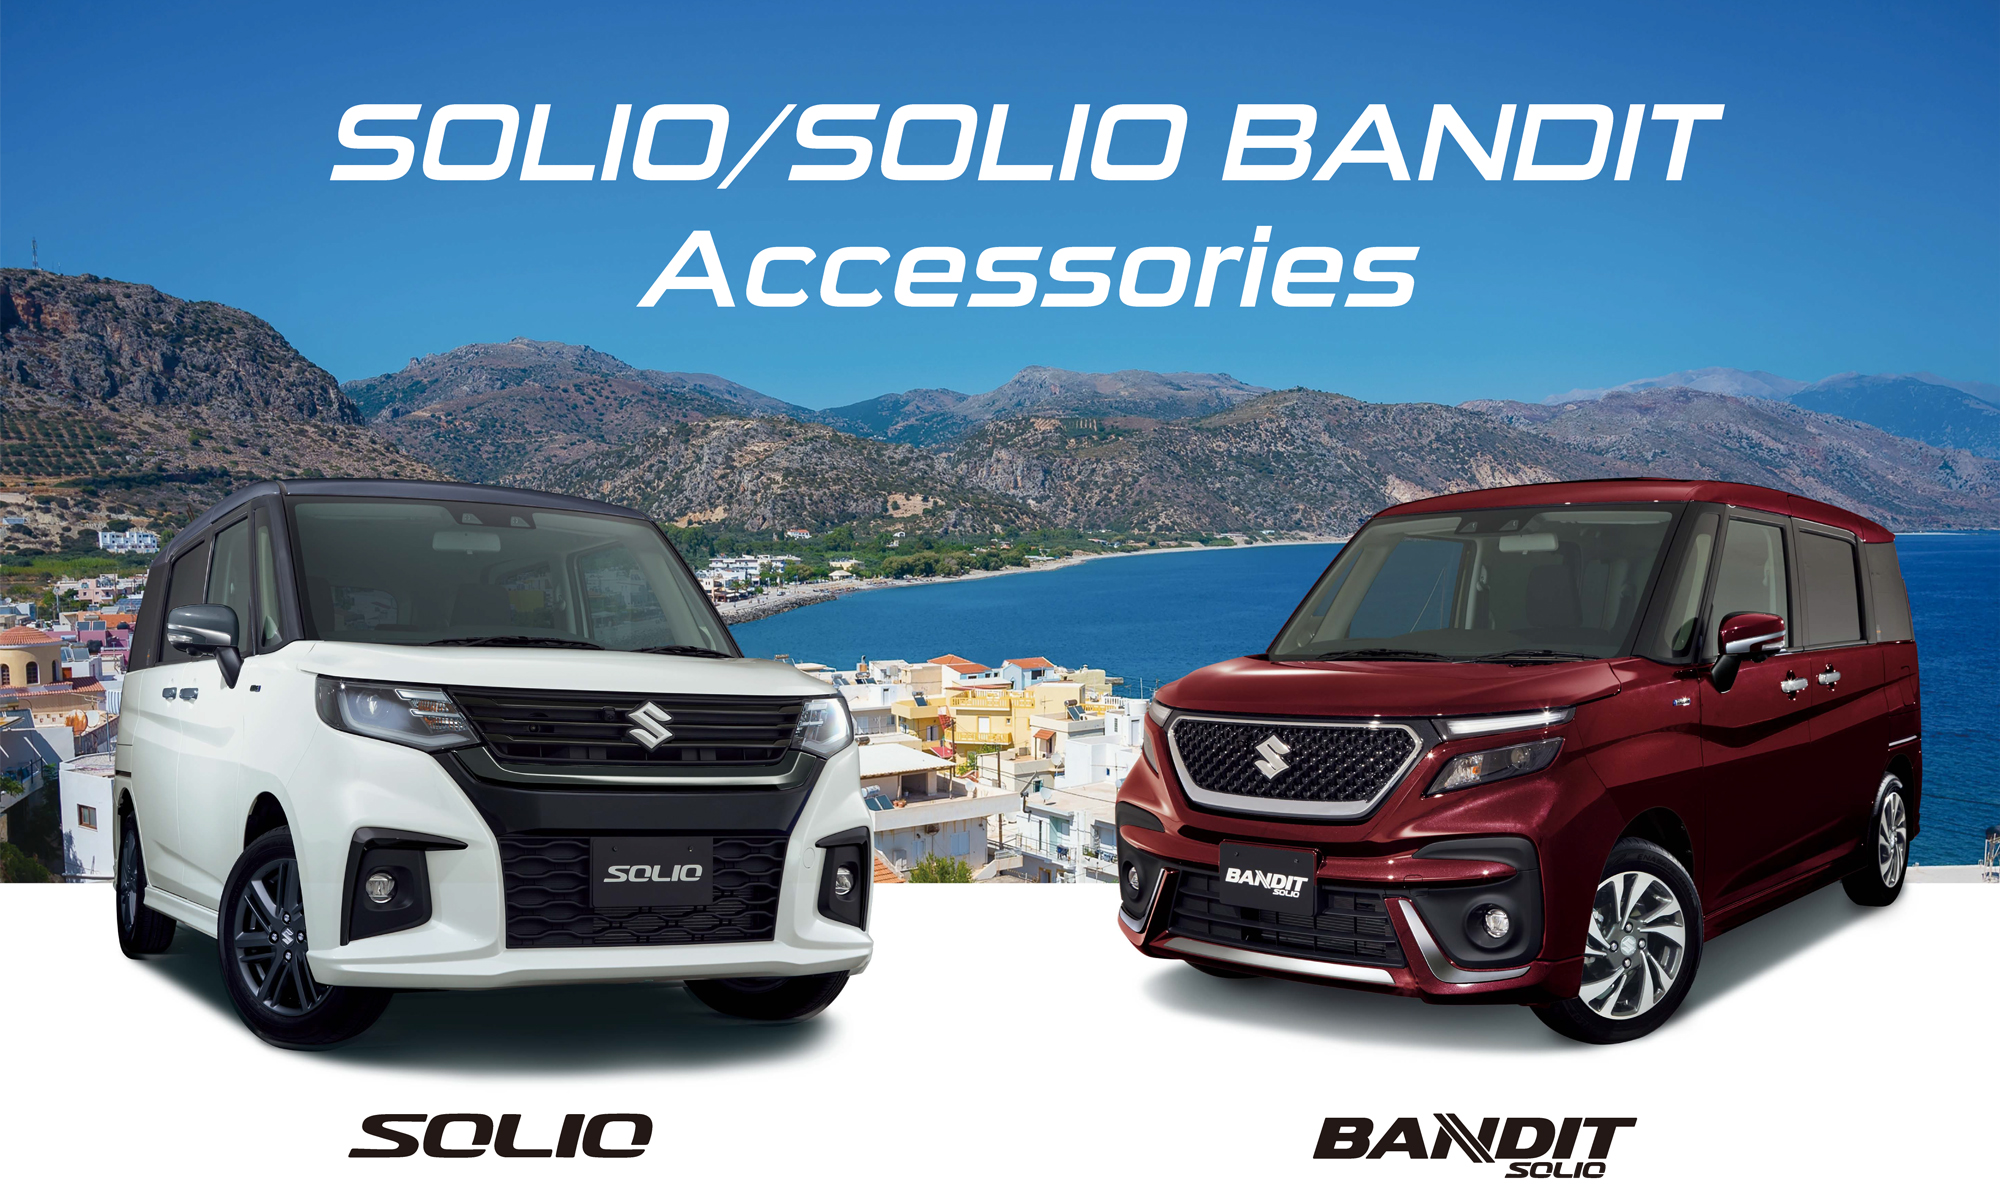 SOLIO/BANDIT Accessories